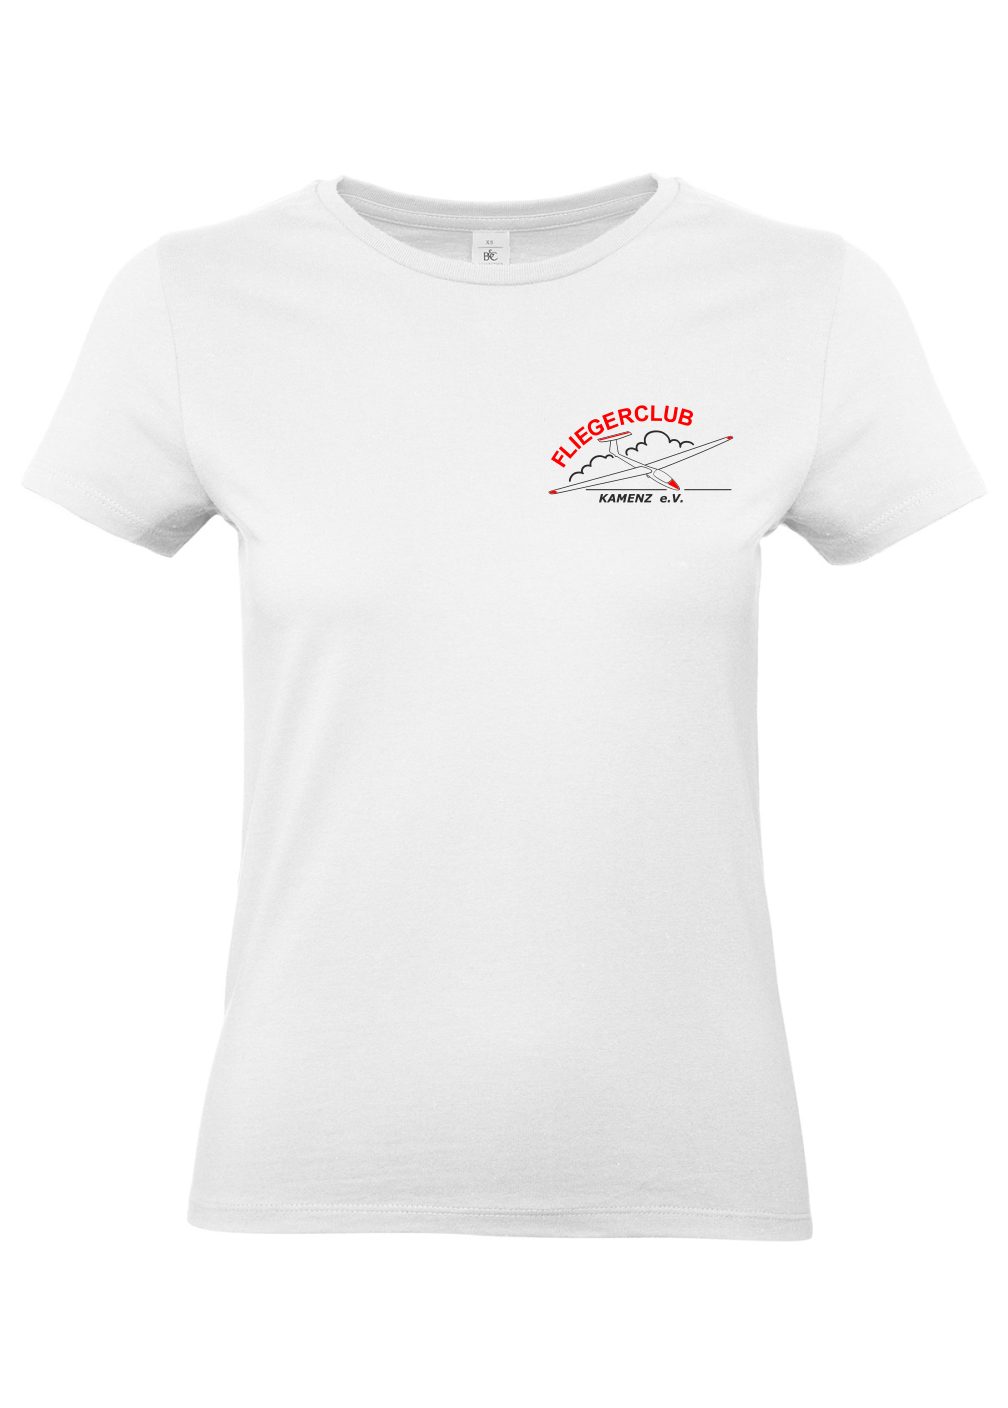 Damen T-Shirt Fliegerclub Kamenz